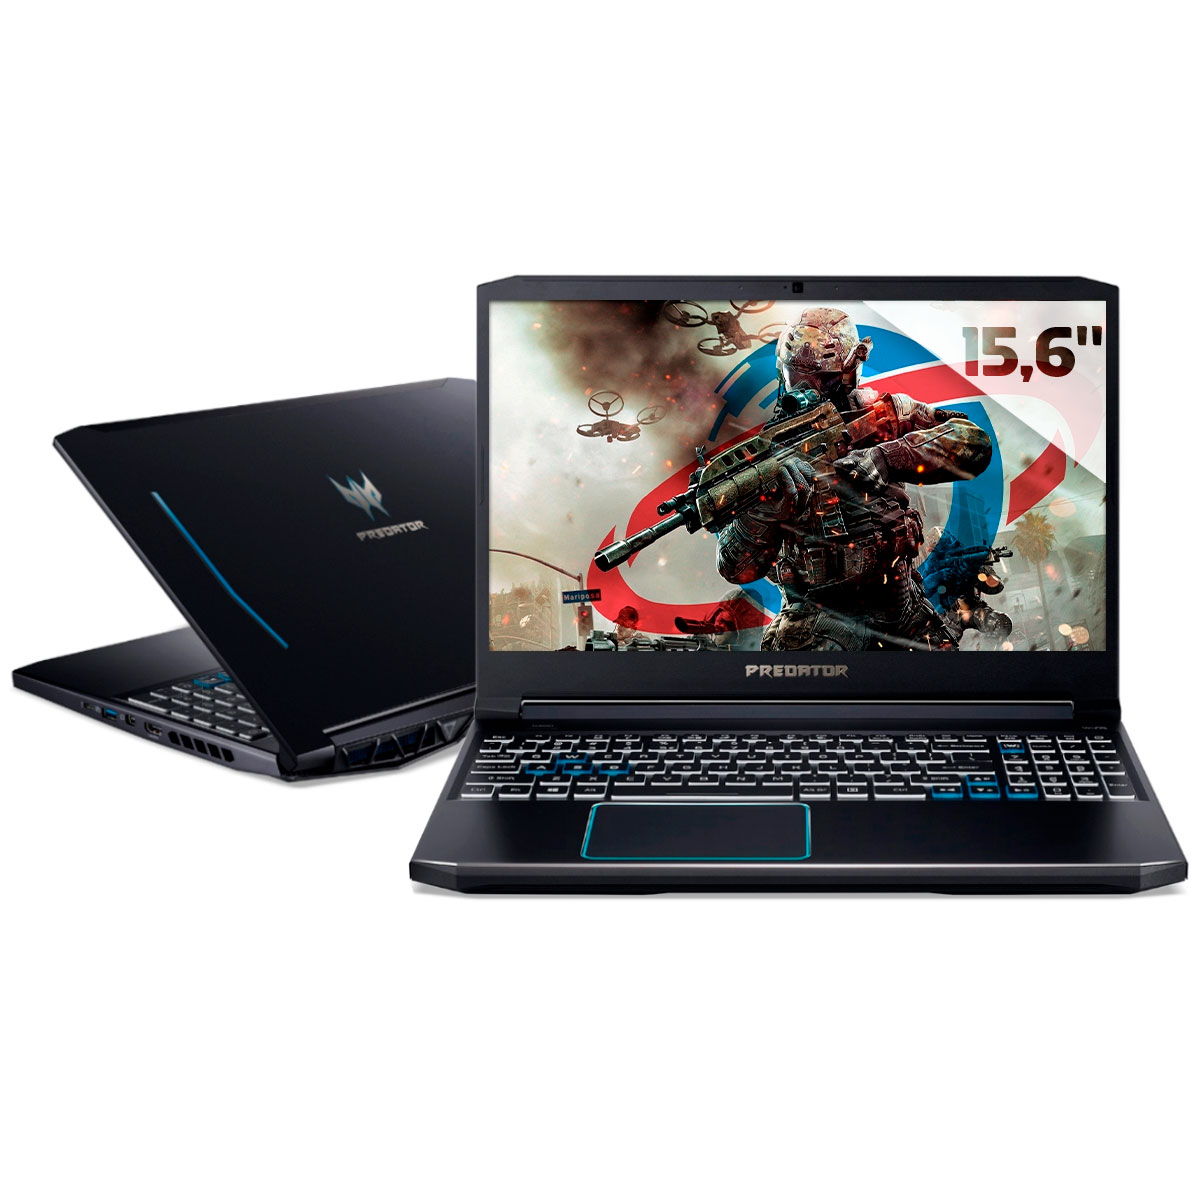 Notebook Acer Gaming Predator Helios 300 - Intel i7 10750H, 16GB, HD 1TB + SSD 256GB, GeForce RTX 2060 6GB, Tela 15.6